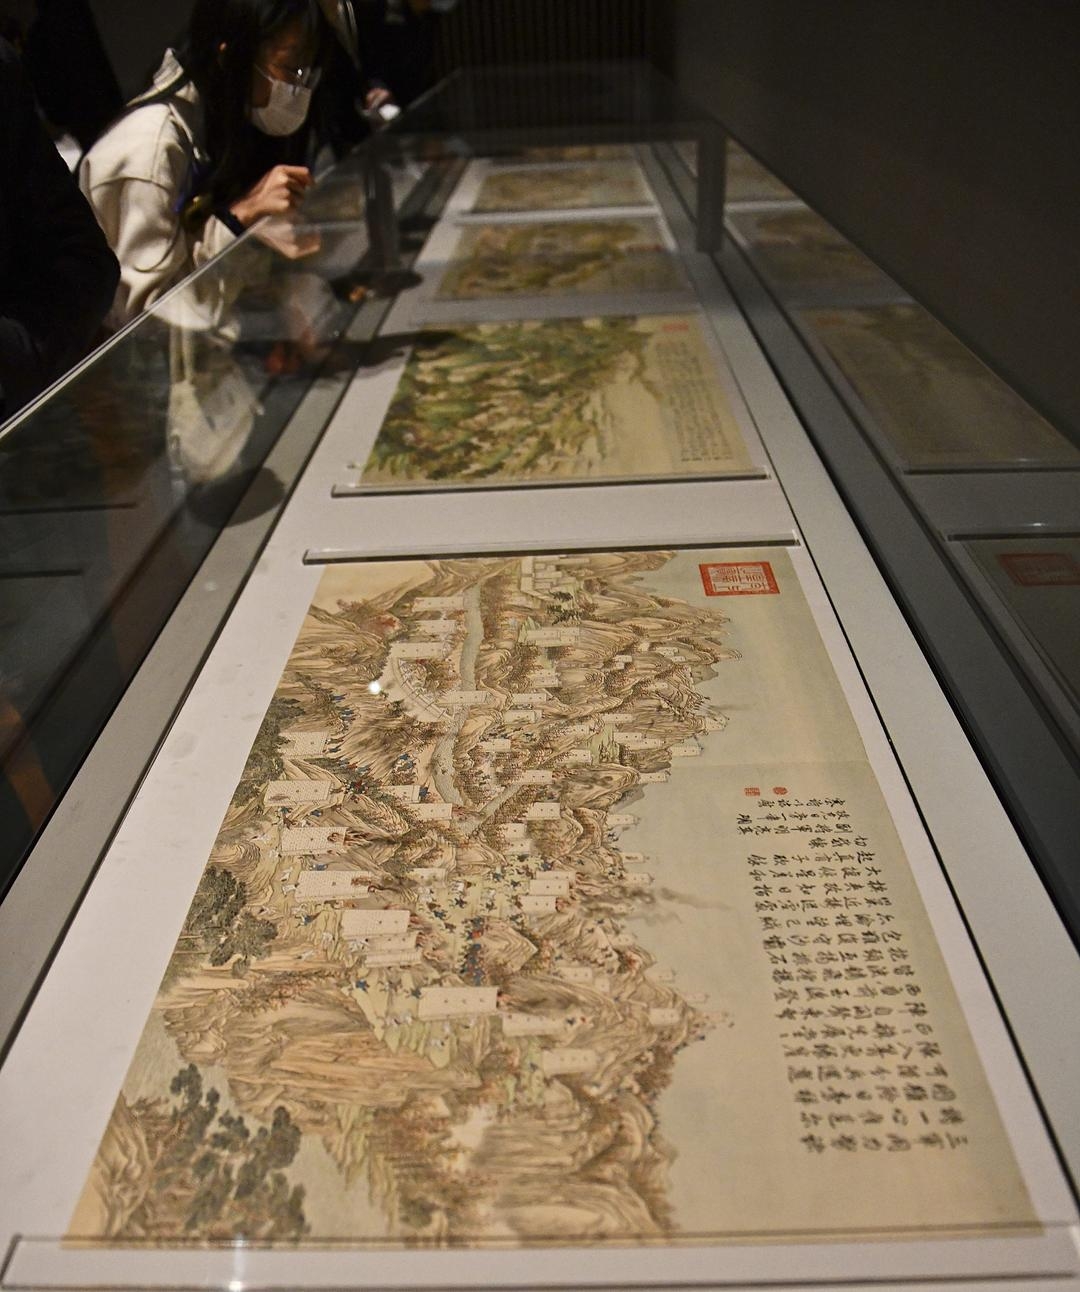 故宫博物院是哪_故宫博物院是在北京吗_故宫博物院和故宫是一个地方吗